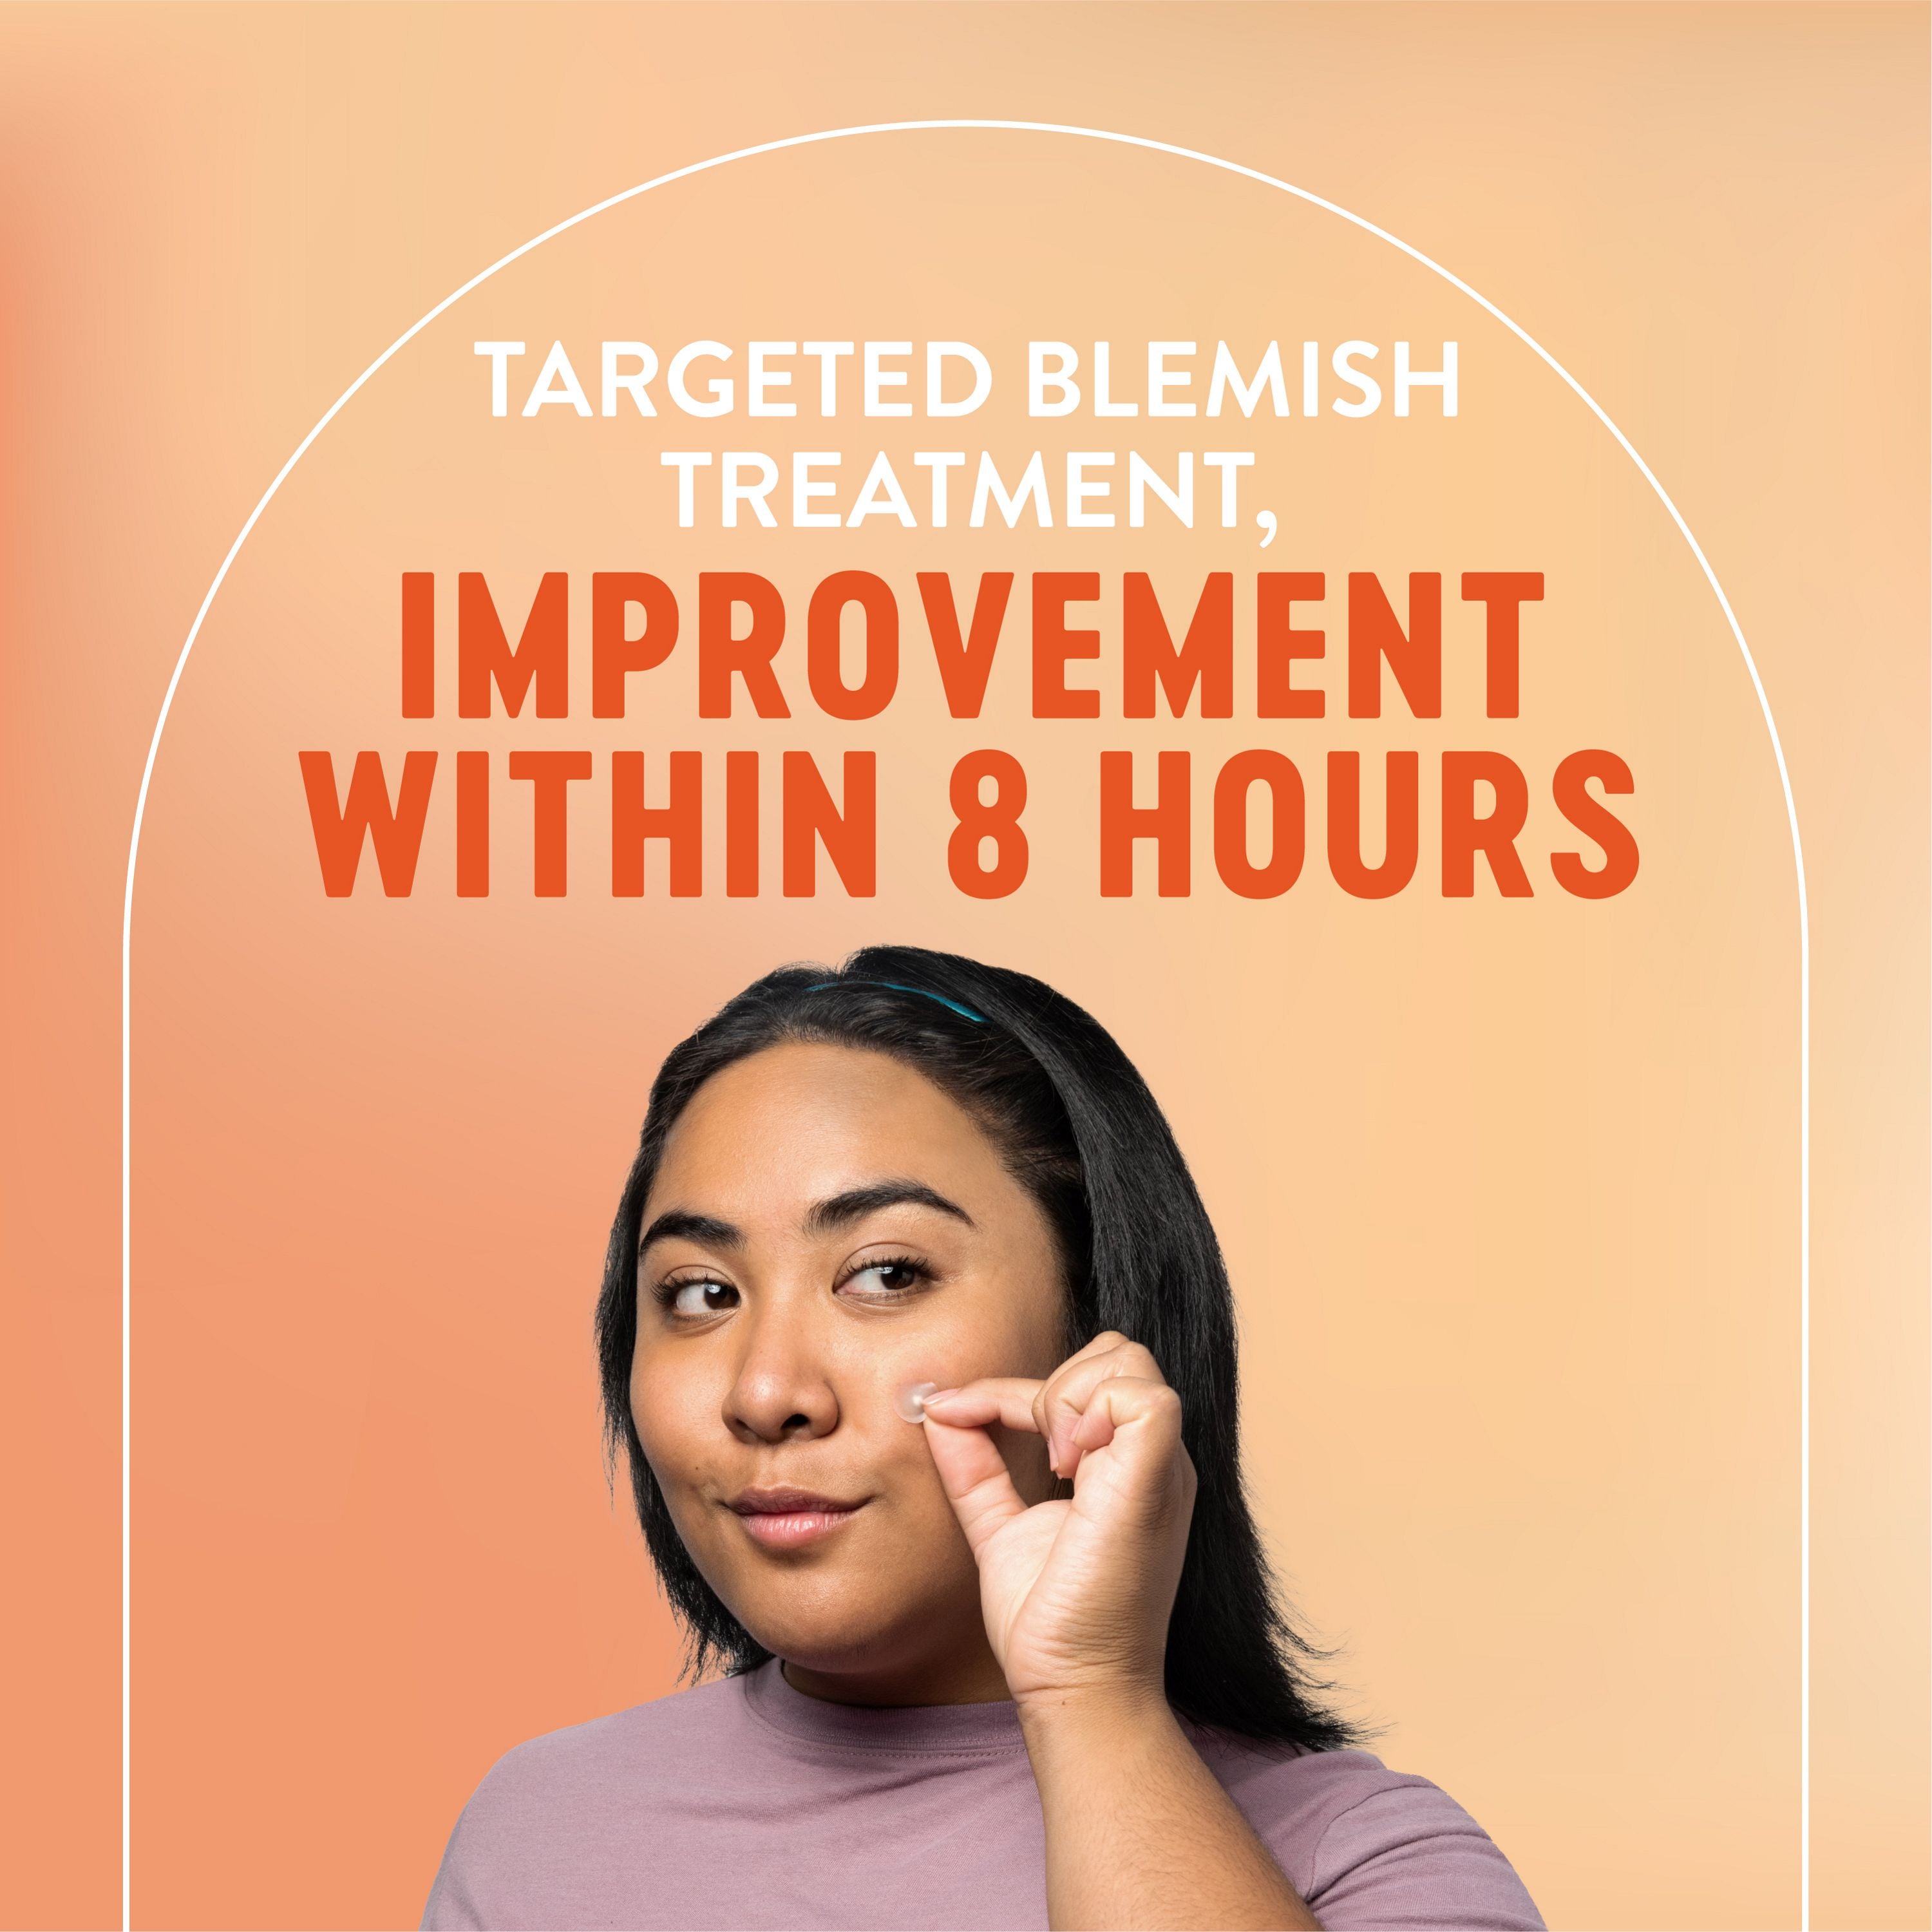 English: Targeted blemish treatment, improvement within 8 hours. Français: Traitement ciblé de l’acné, amélioration dans les 8 heures.